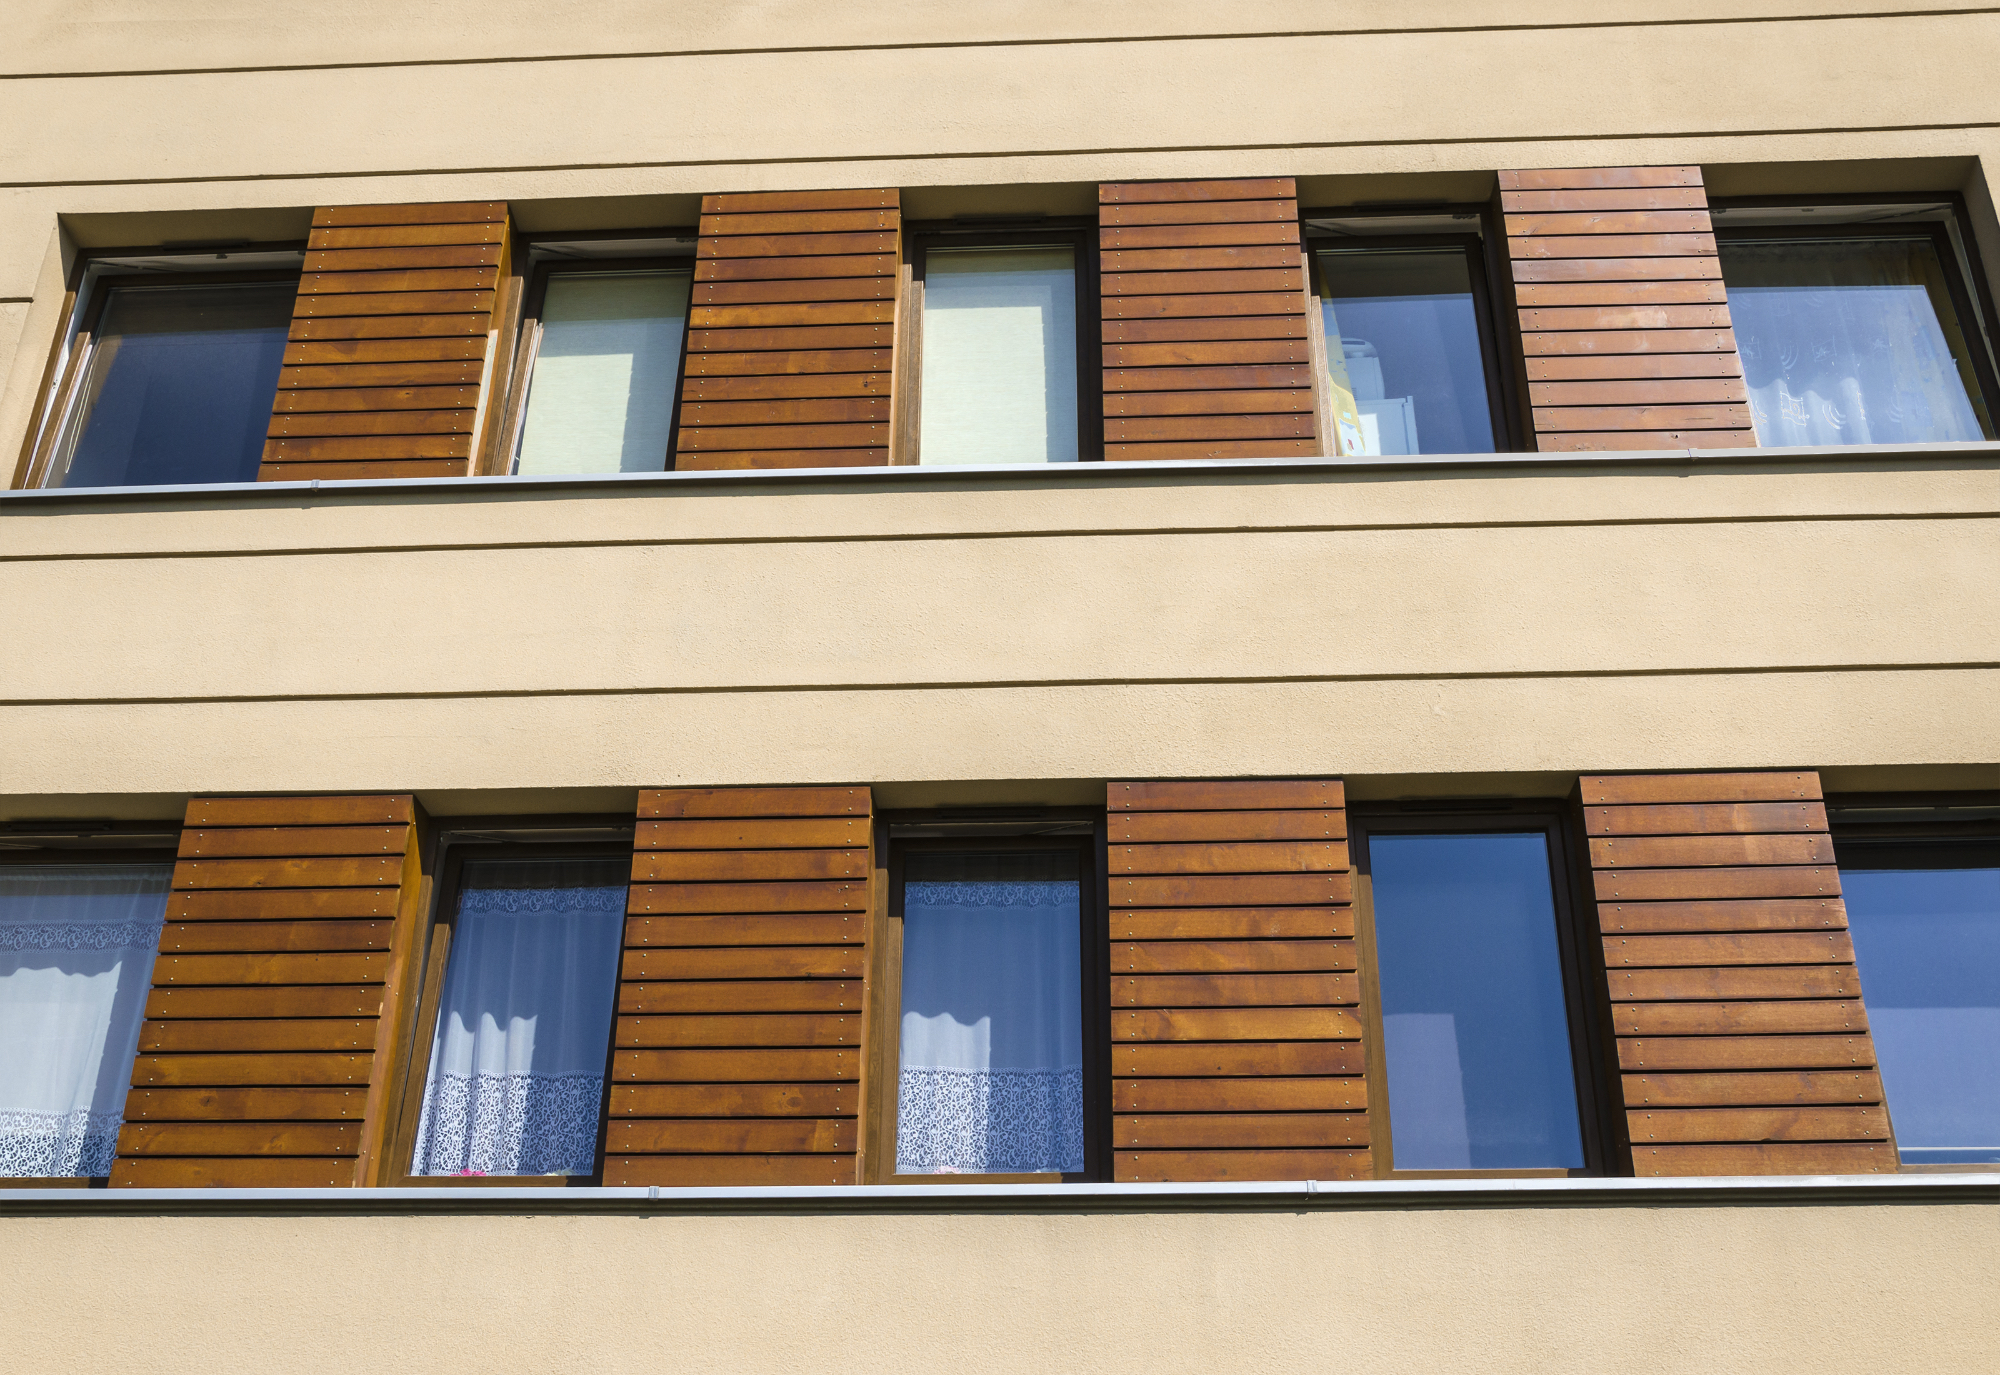 Fasadne plošče imitacija lesa so bile primerne za tip naše hiše